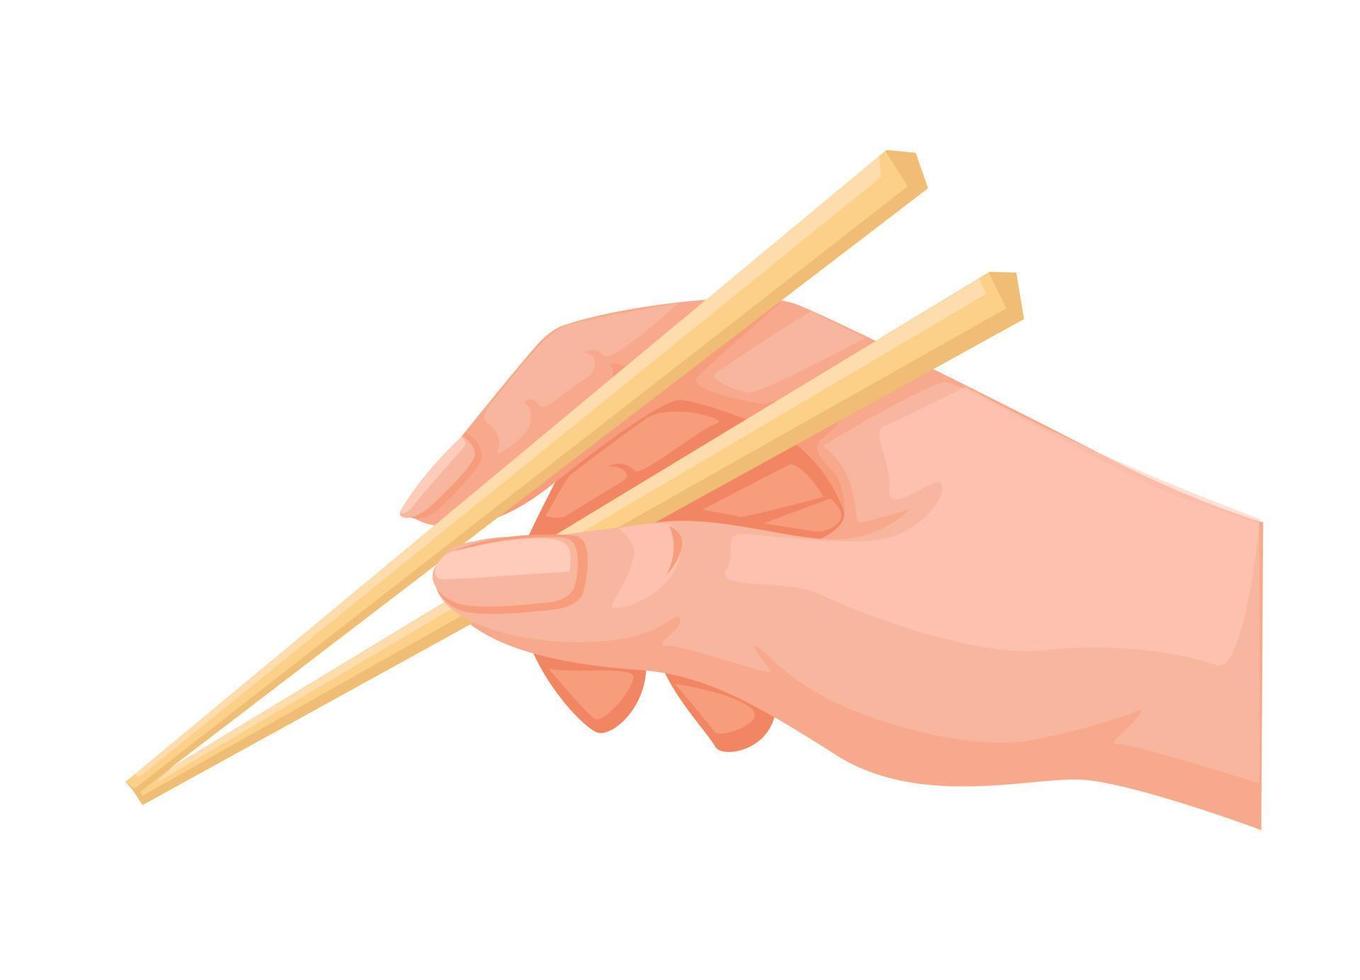 mano sostenga palillos cocina asiática y utensilios para comer símbolo ilustración de dibujos animados vector